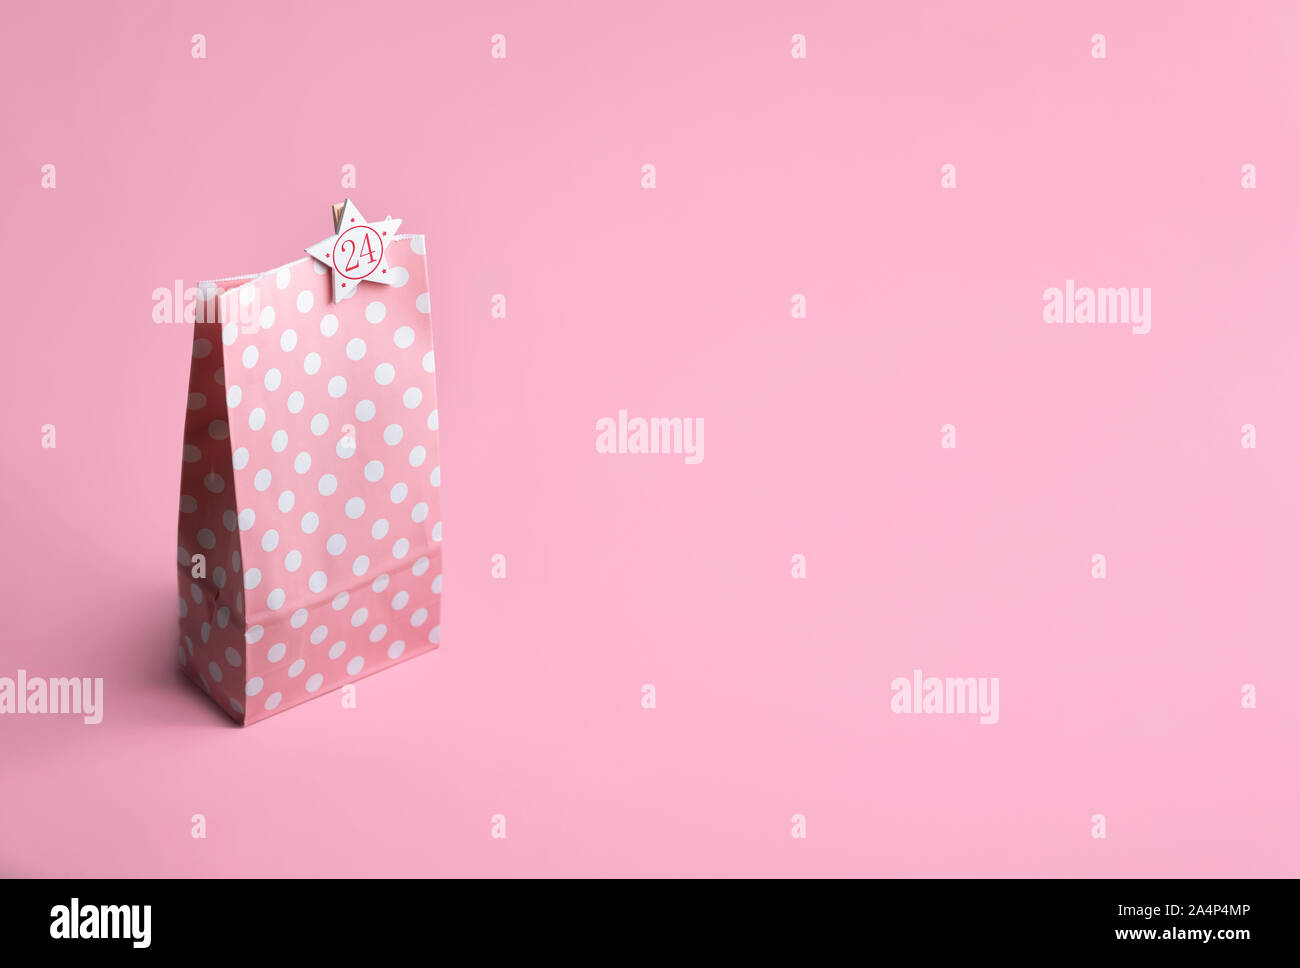 Regalo rosa sacchetto di carta con puntini bianchi e il numero 24, su un sfondo rosa. Natale calendario dell'avvento del concetto. La Vigilia di Natale il contesto. Gifting tema. Foto Stock